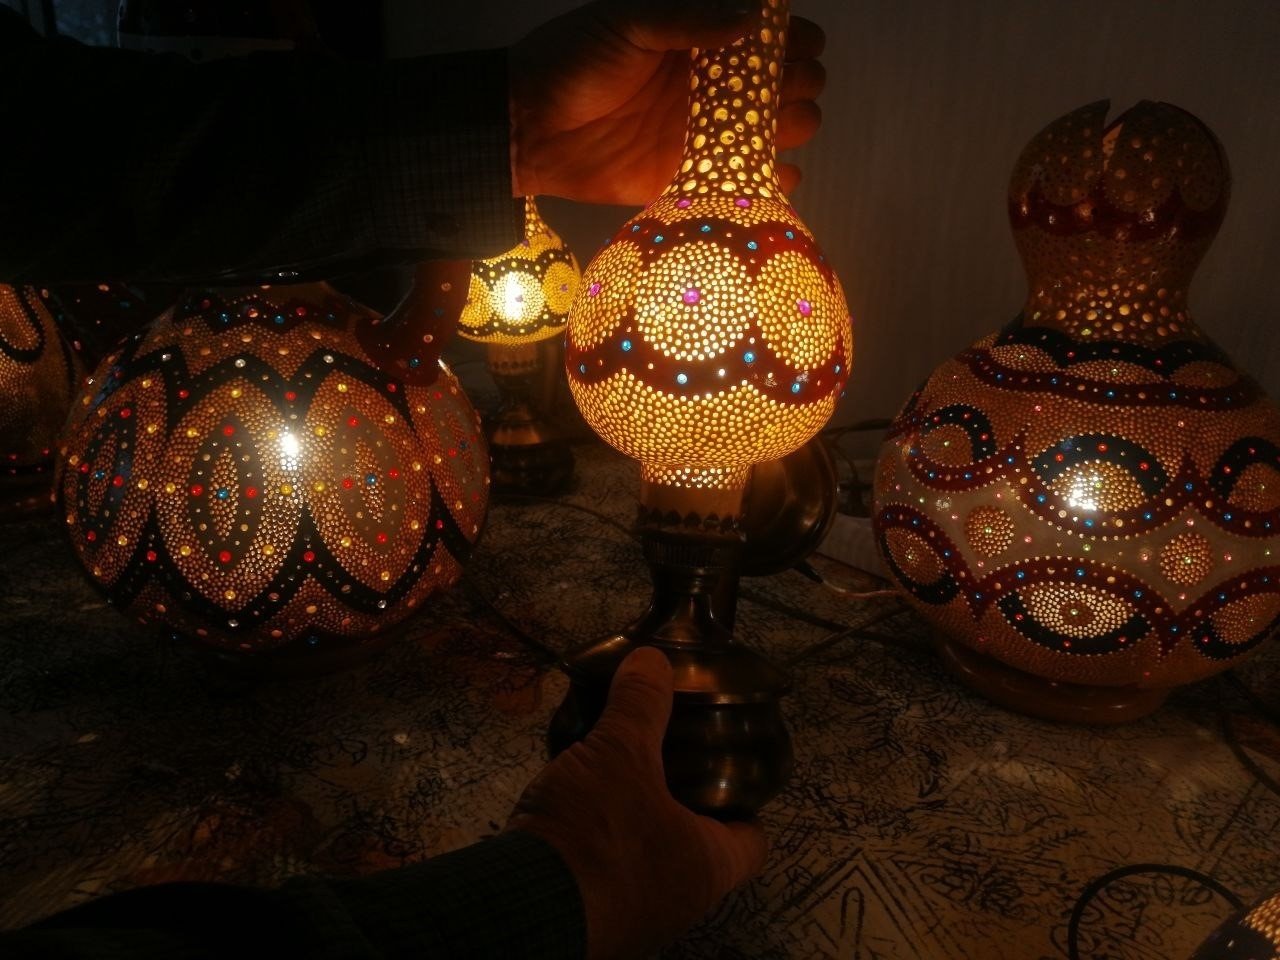 Calabash (bottle gourd) lamps handmade by Serdar Takuçin, Elazağı, eastern Turkey, Jan. 18, 2022. (IHA Photo)